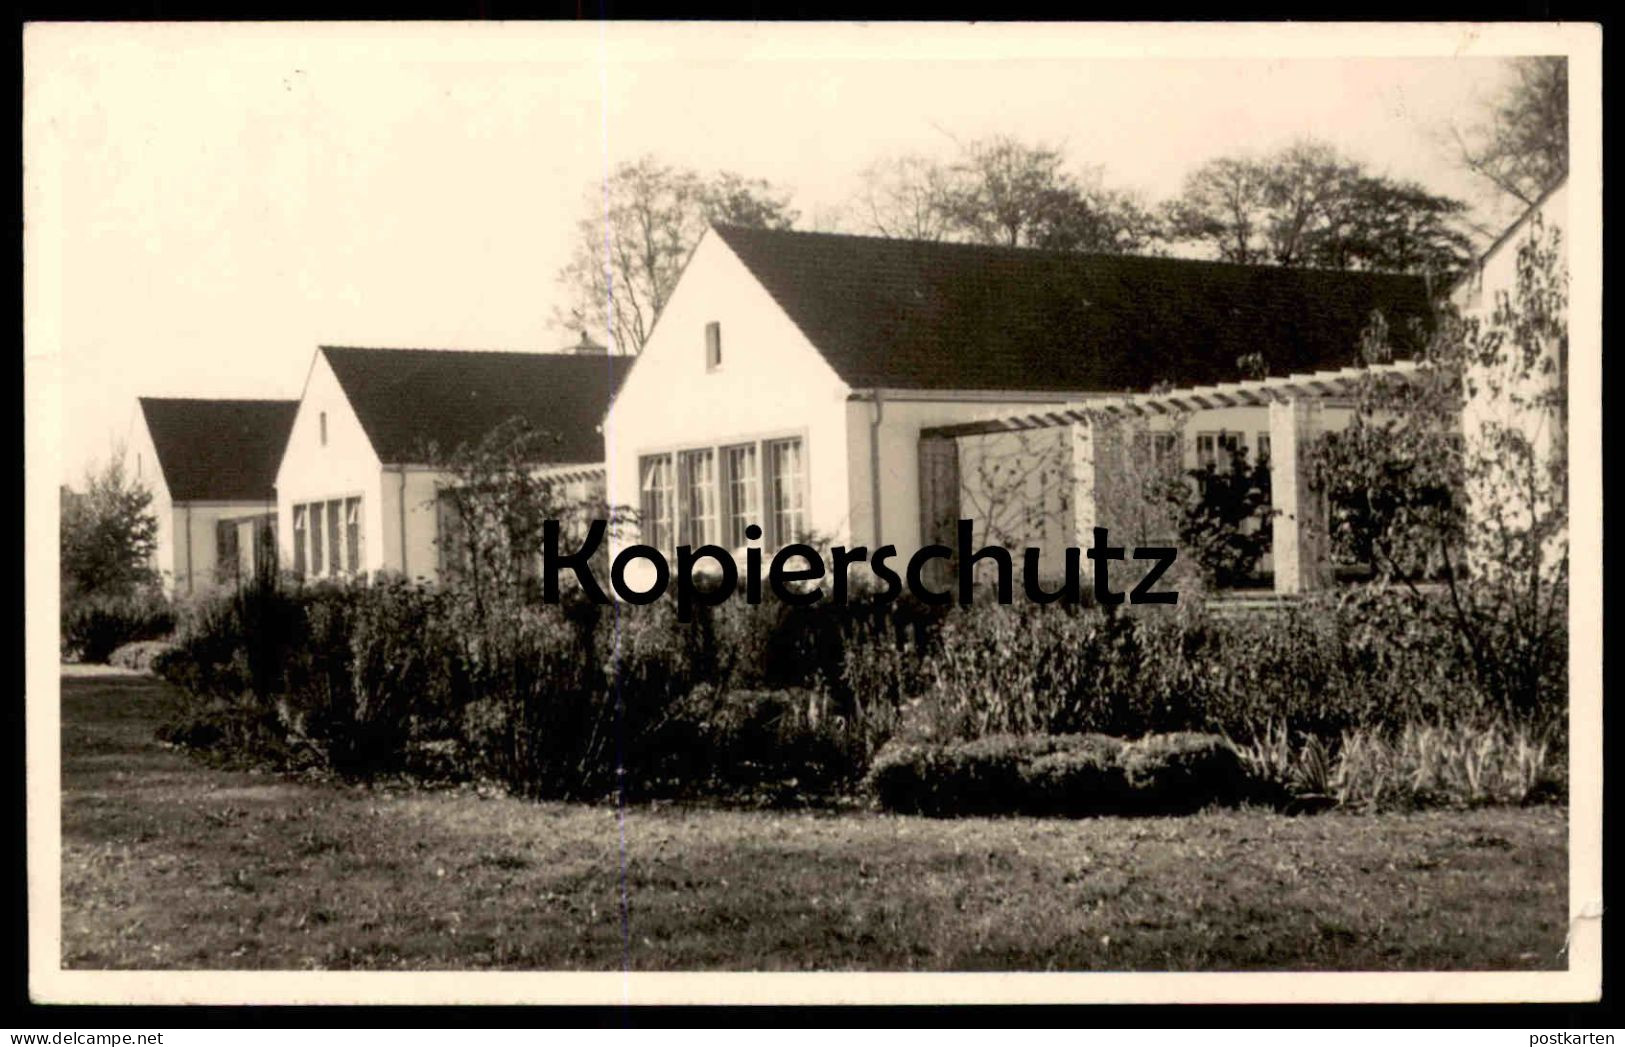 ALTE FOTO POSTKARTE BORGHORST GEBÄUDE HAUS REIHENHÄUSER 1954 Steinfurt AK Ansichtskarte Cpa Photo Postcard - Steinfurt